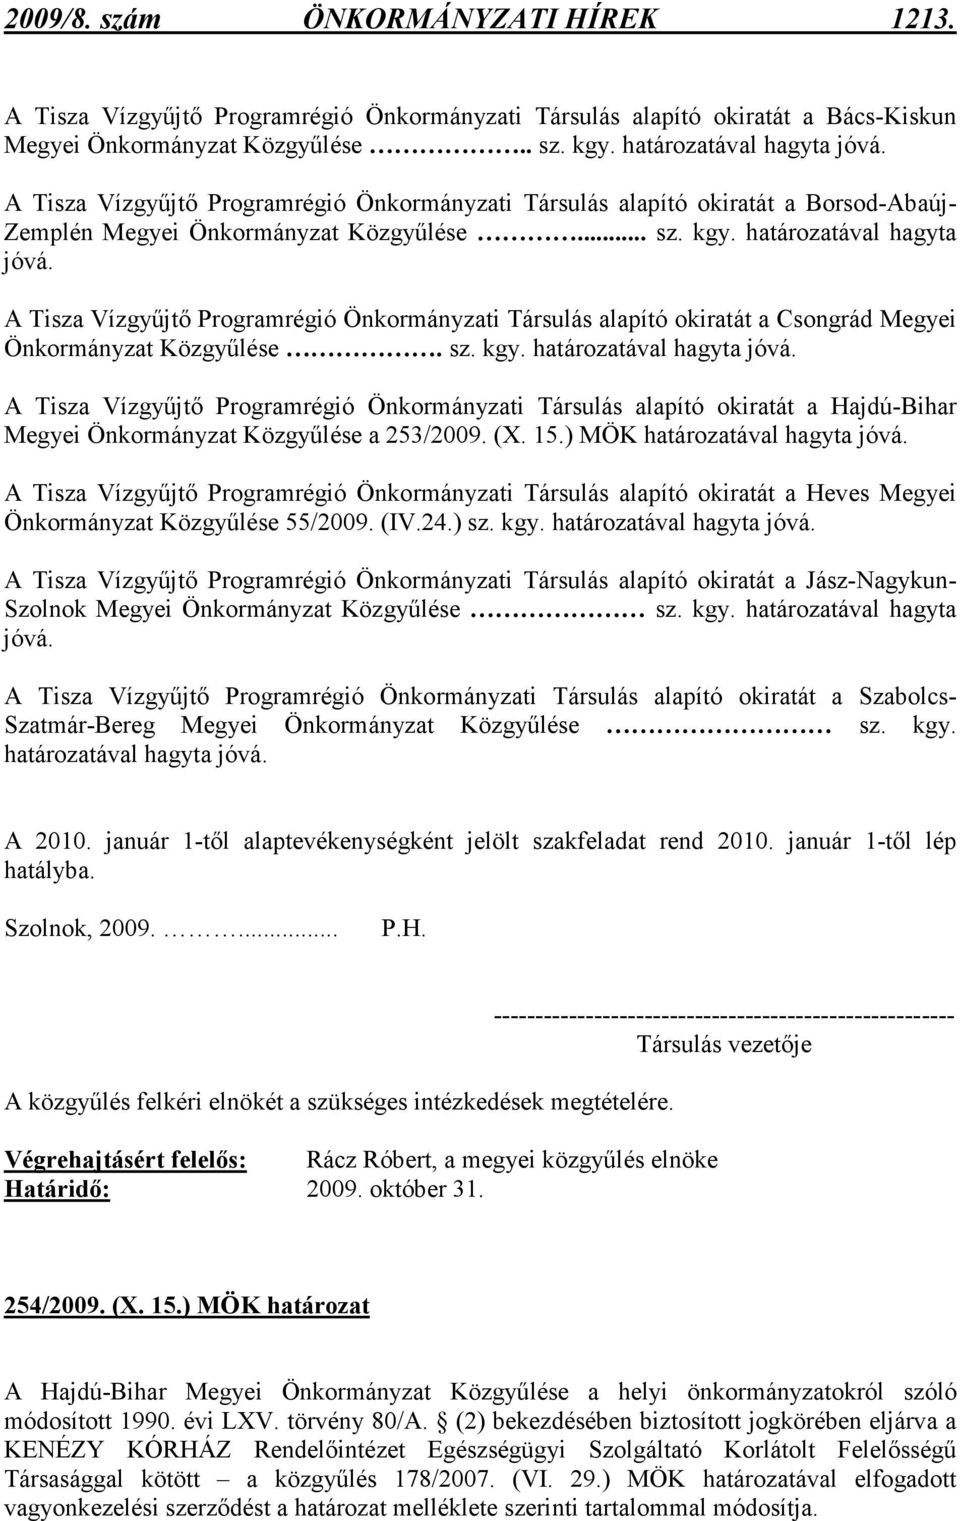 A Tisza Vízgyőjtı Programrégió Önkormányzati Társulás alapító okiratát a Csongrád Megyei Önkormányzat Közgyőlése. sz. kgy. ával hagyta jóvá.